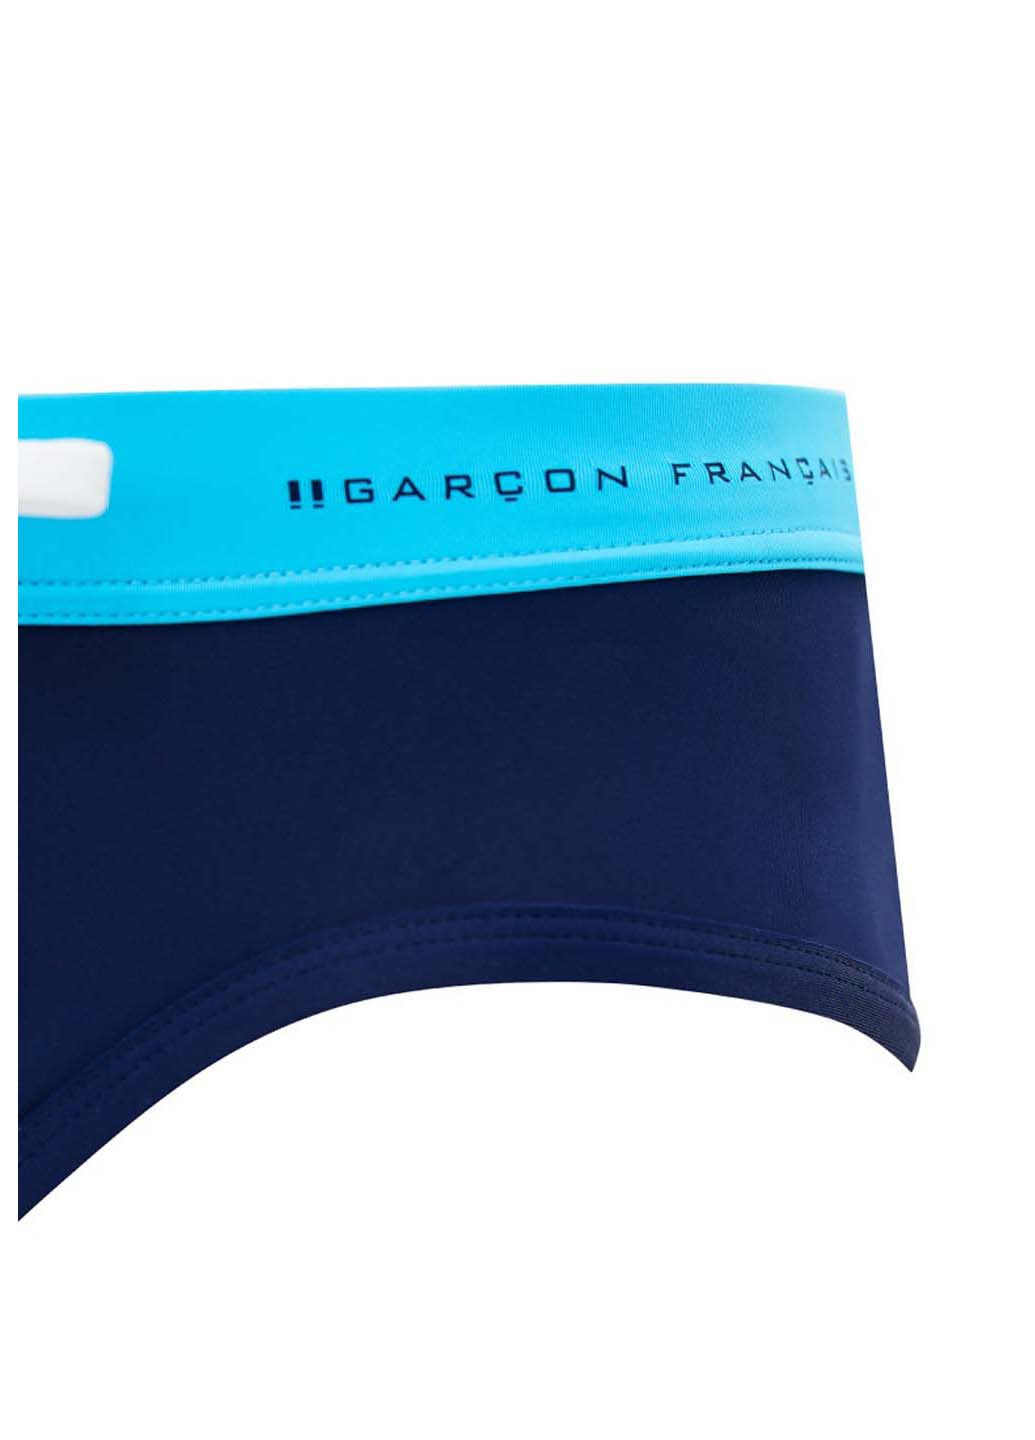 Мужские синие пляжные плавки Garcon Francais